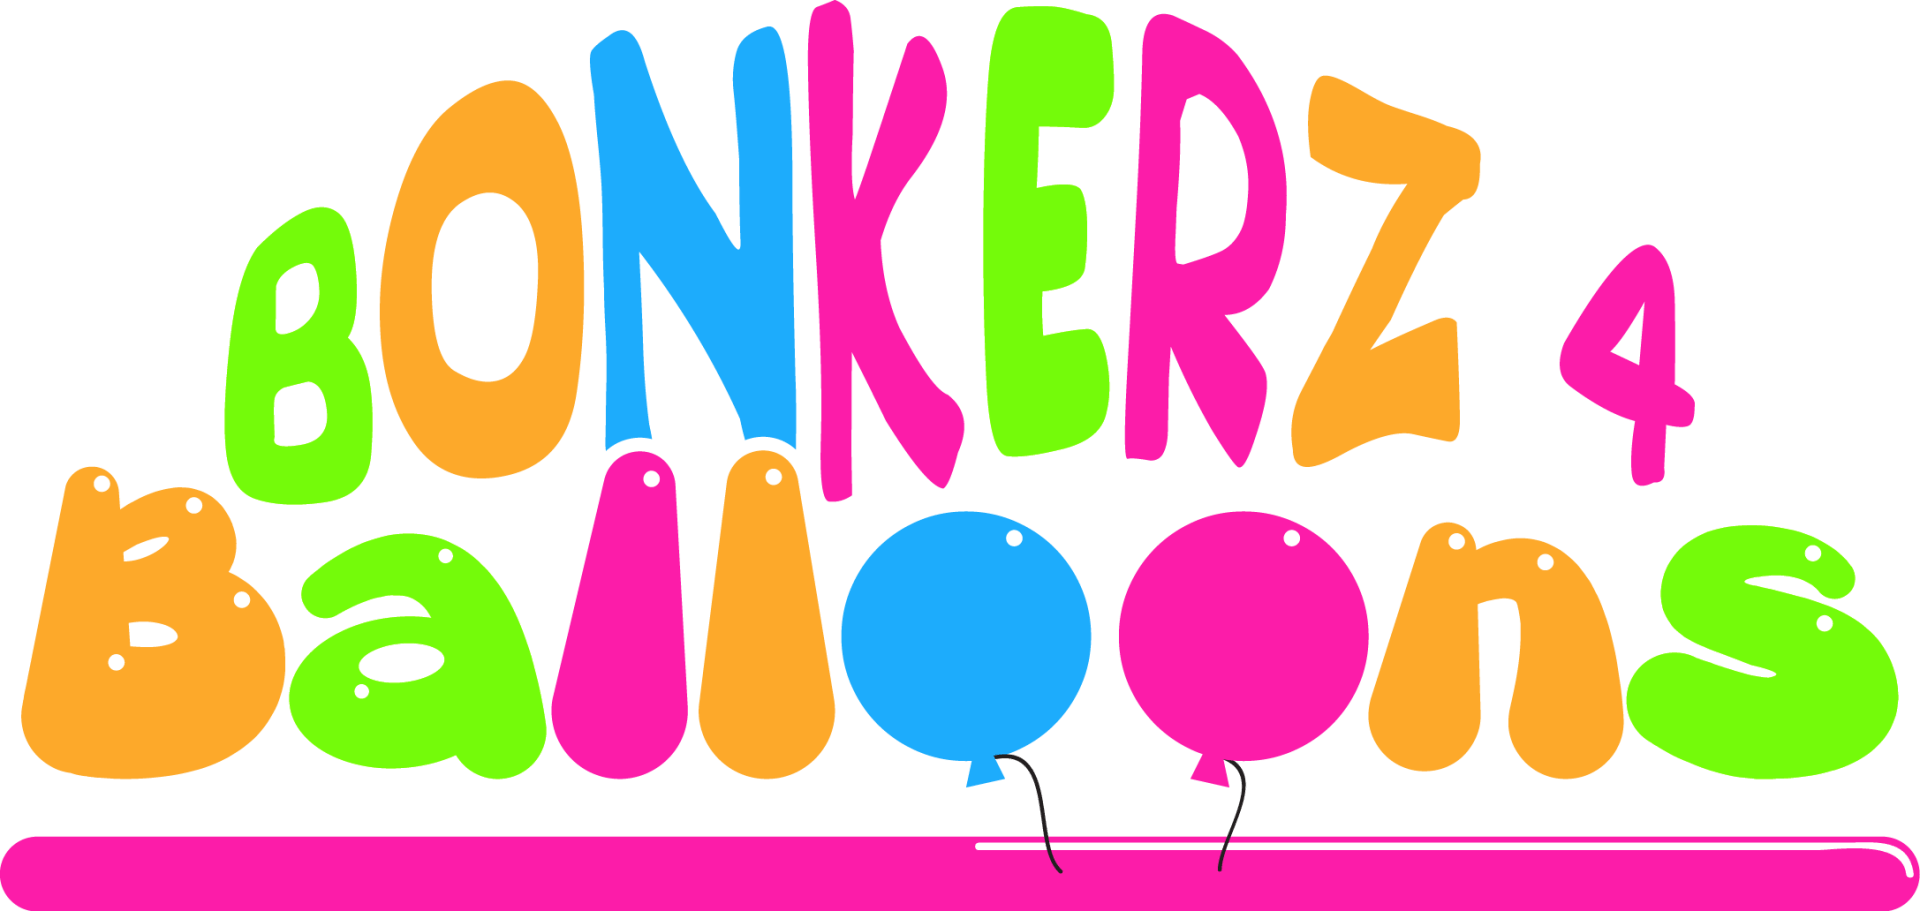 Bonkerz 4 Balloons